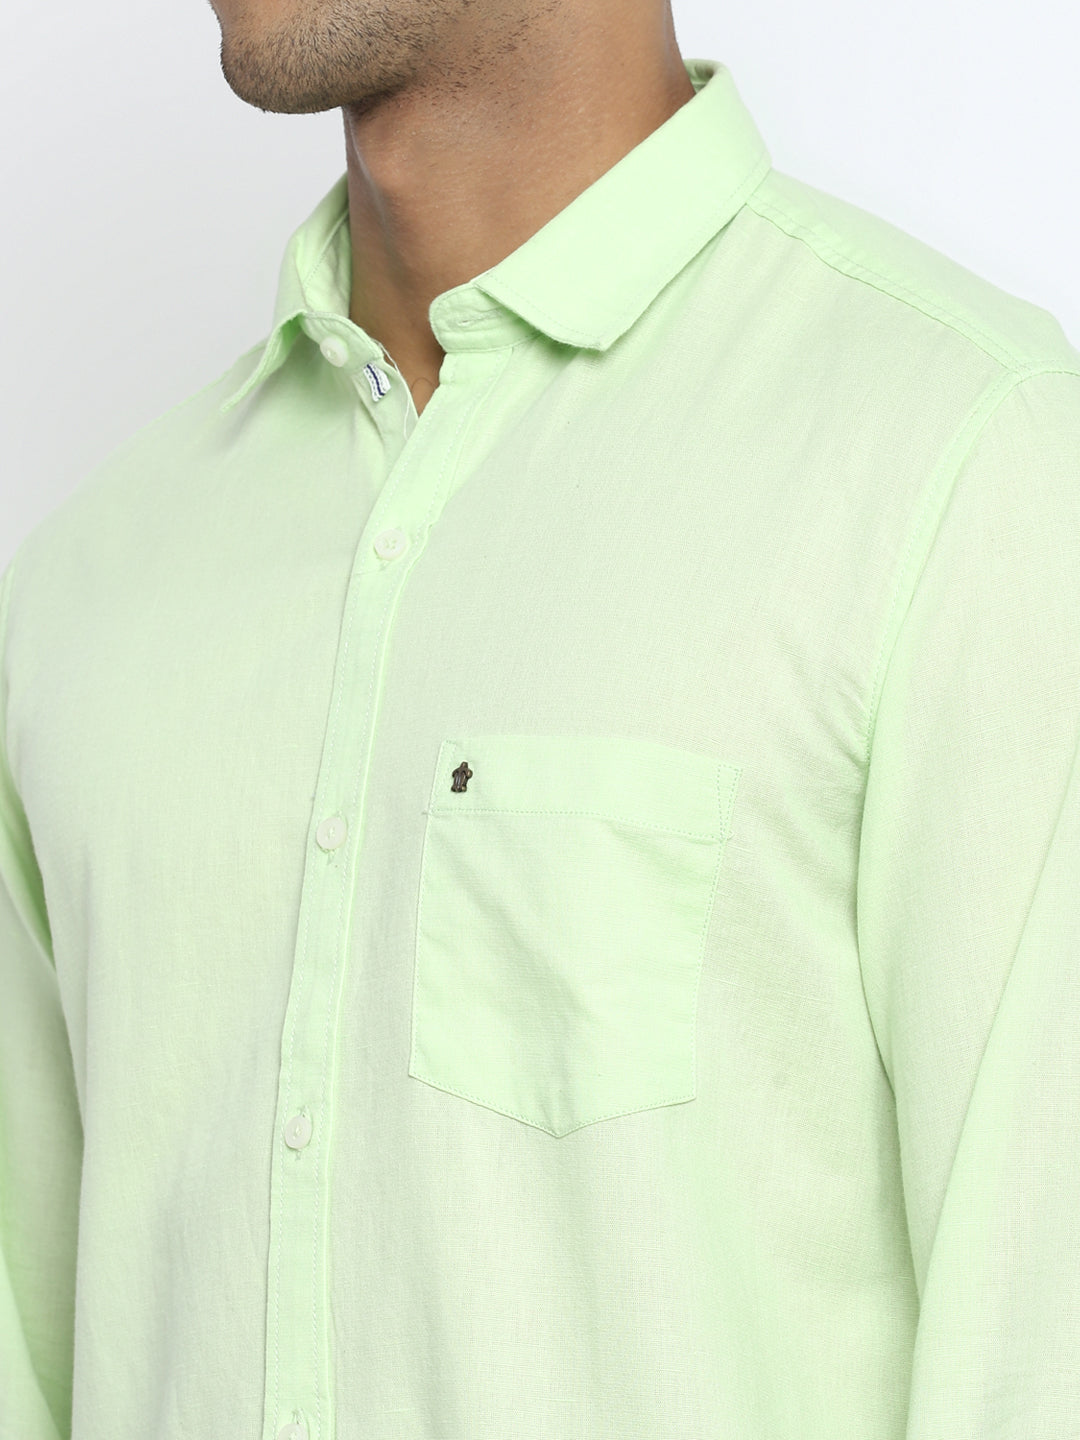 Cotton Linen Light Green Solid Slim Fit Shirt